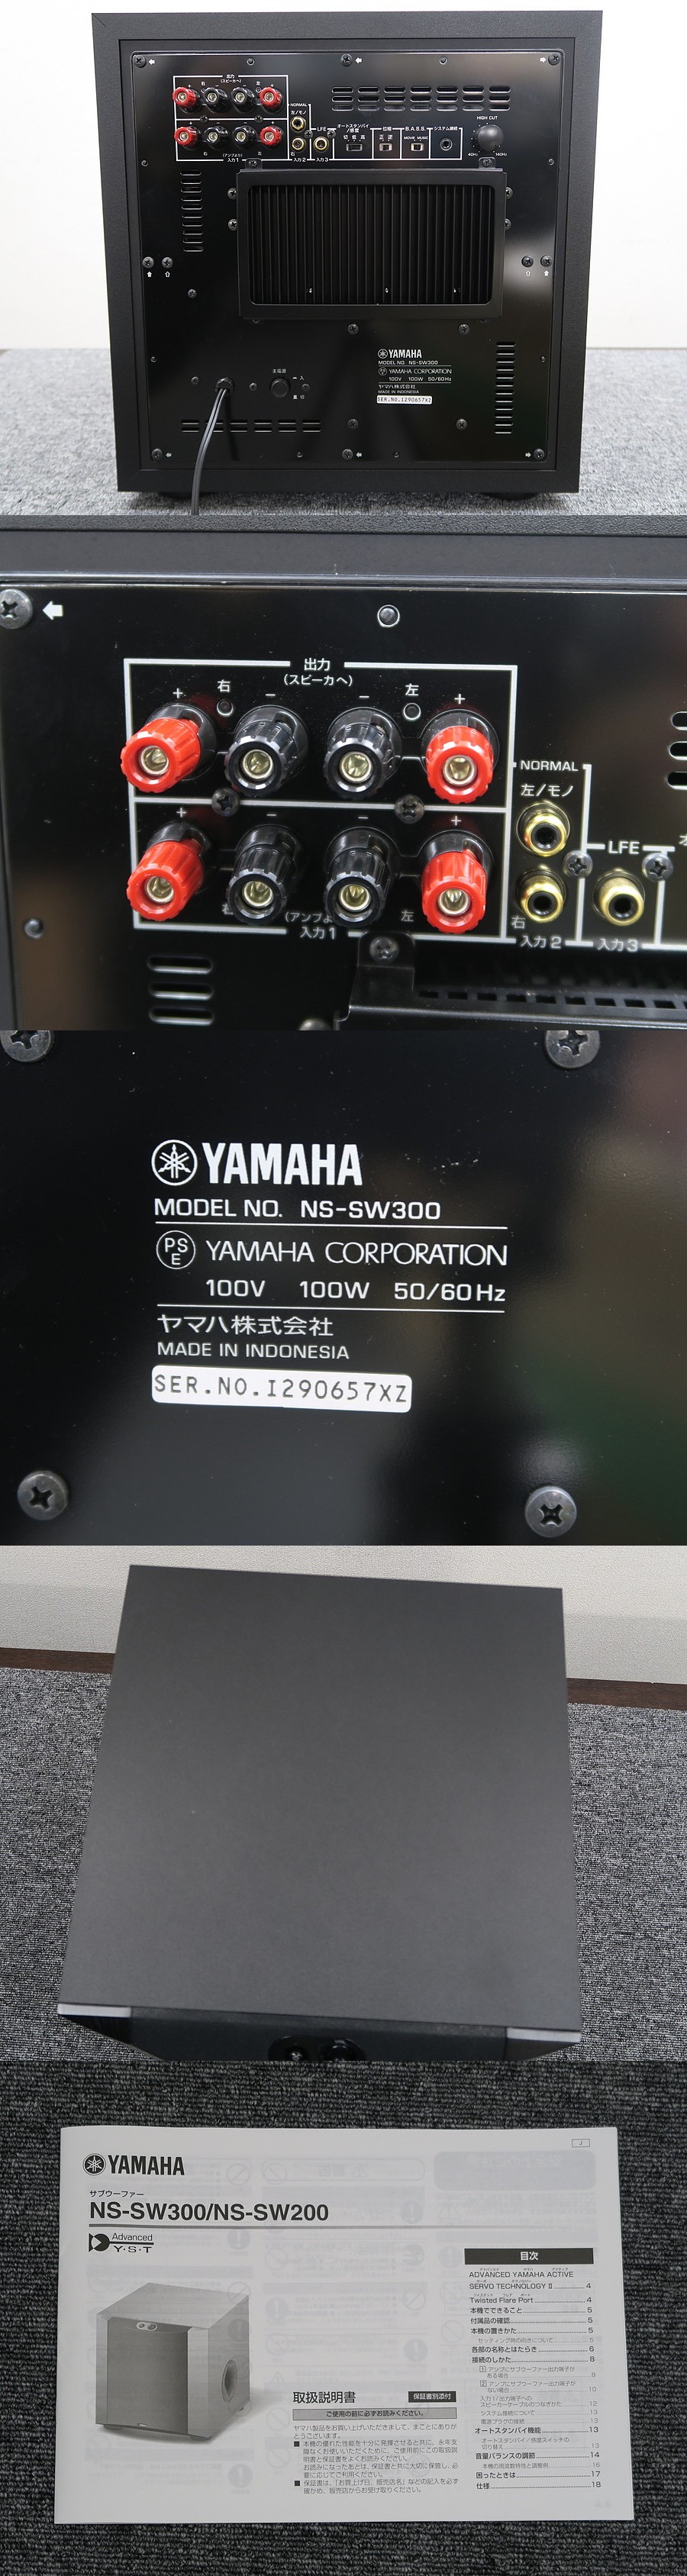 YAMAHA NS-SW300 サブウーファー 説明書付き - スピーカー